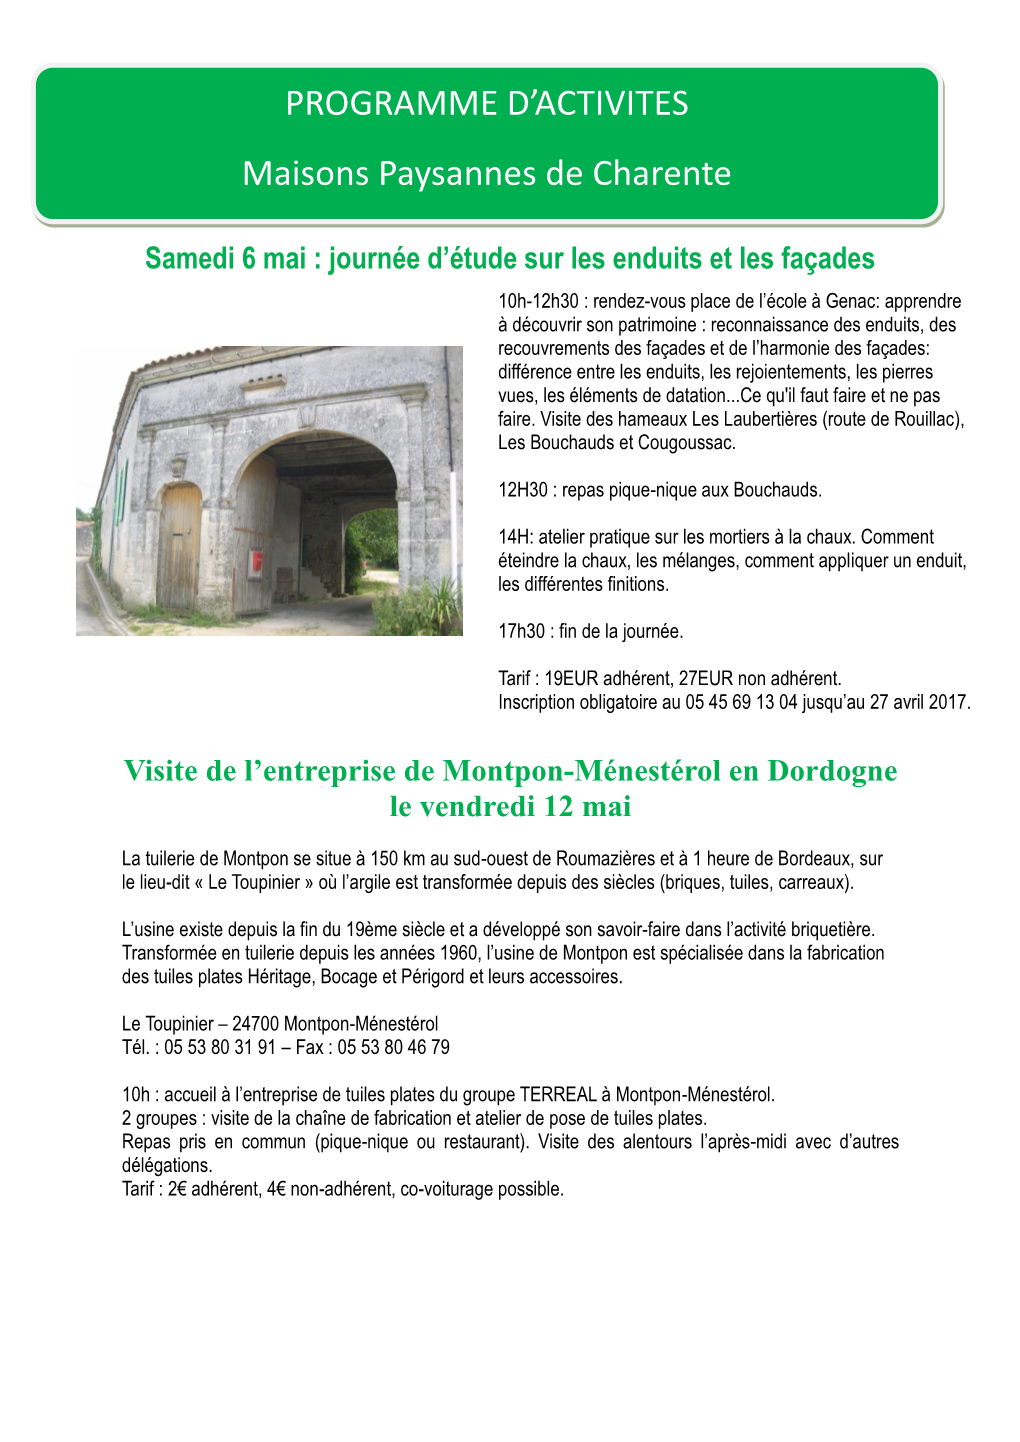 PROGRAMME D'activites Maisons Paysannes De Charente